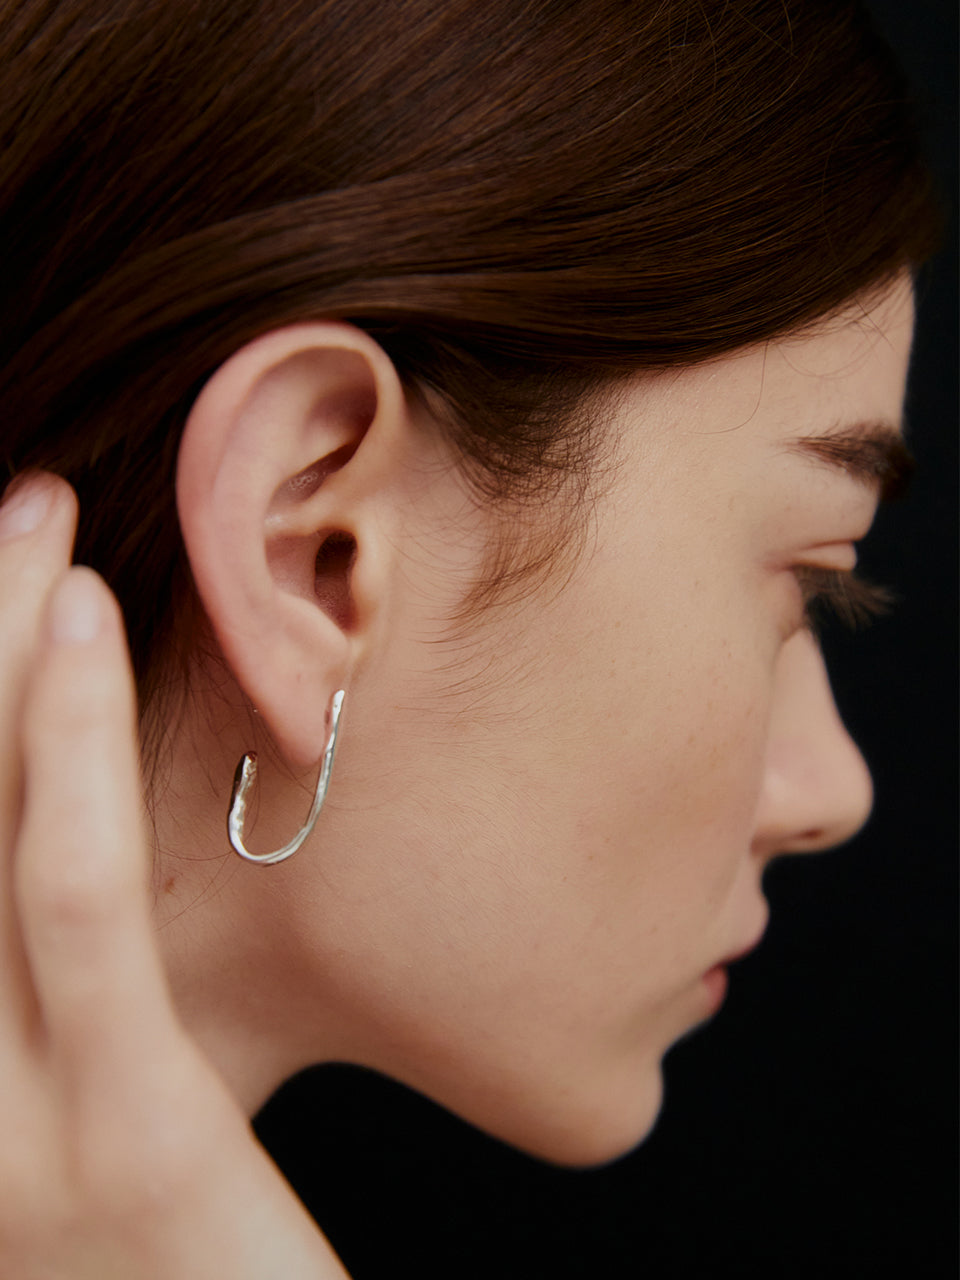 Knot earrings 001 (silver)